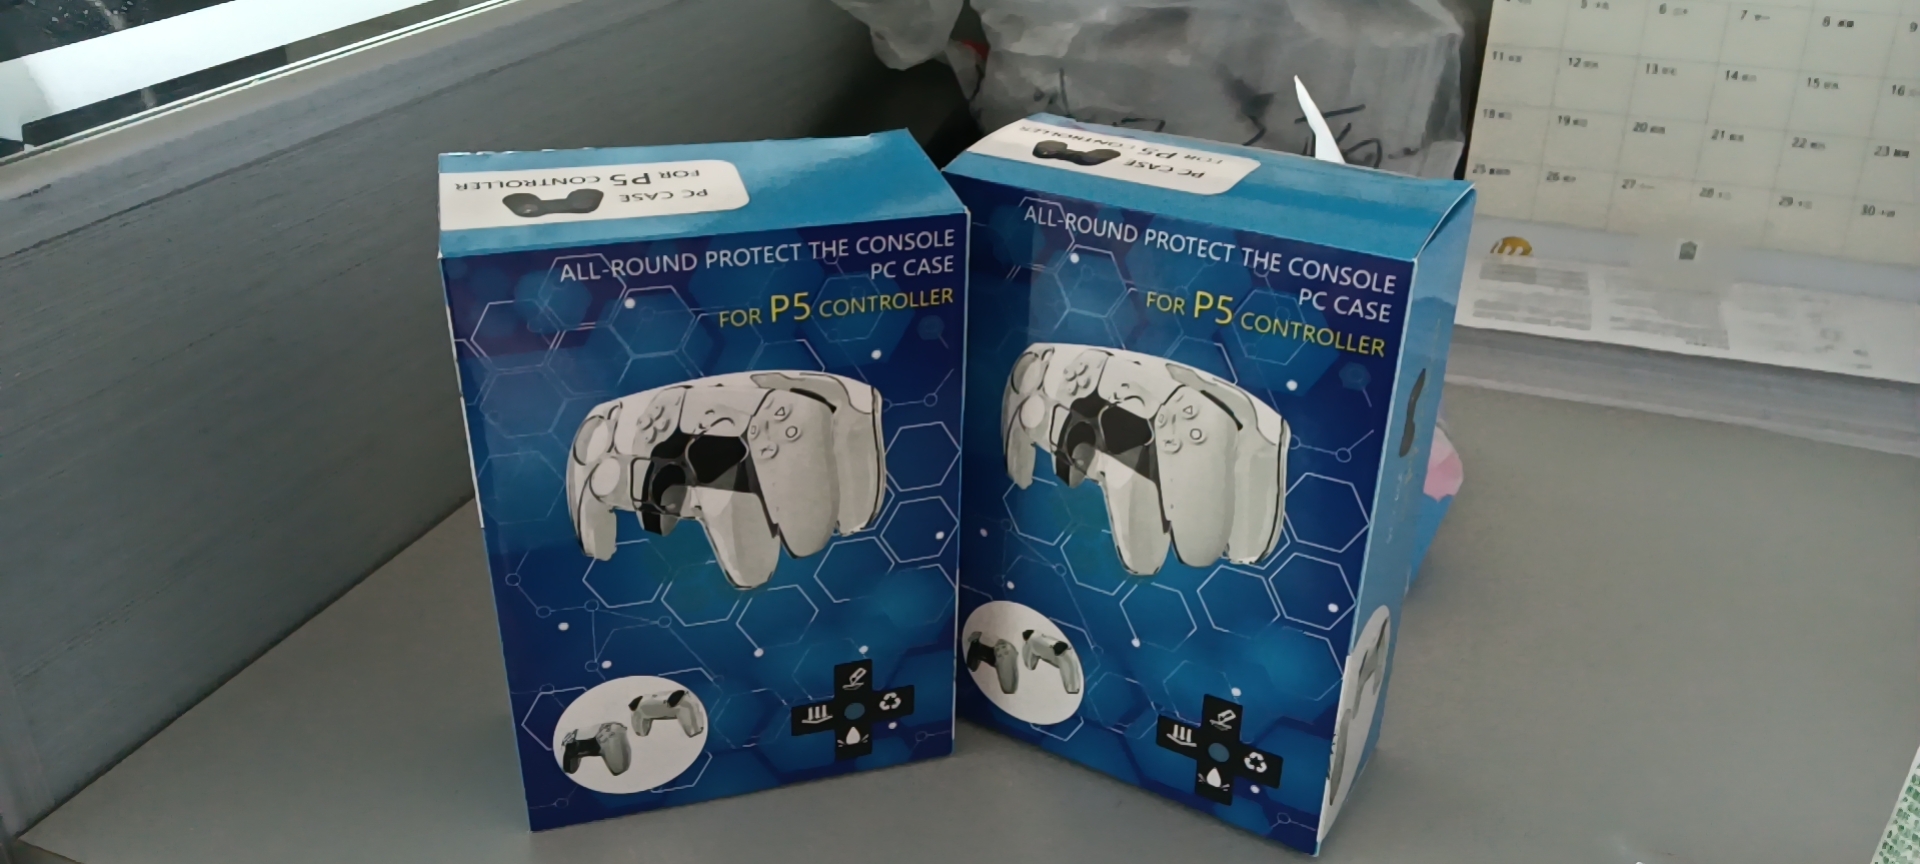 PS5游戏手柄彩盒价格  PS5游戏手柄彩盒供应商 PS5游戏手柄彩盒定制图片